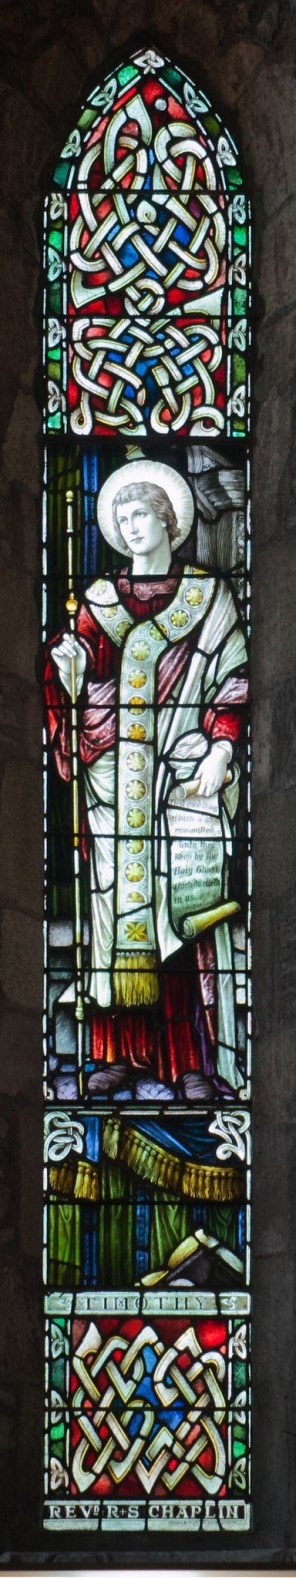 에페수스의 성 티모테오_photo by Andreas F. Borchert_in the Cathedral of St Brigid in Kildare_Ireland.jpg